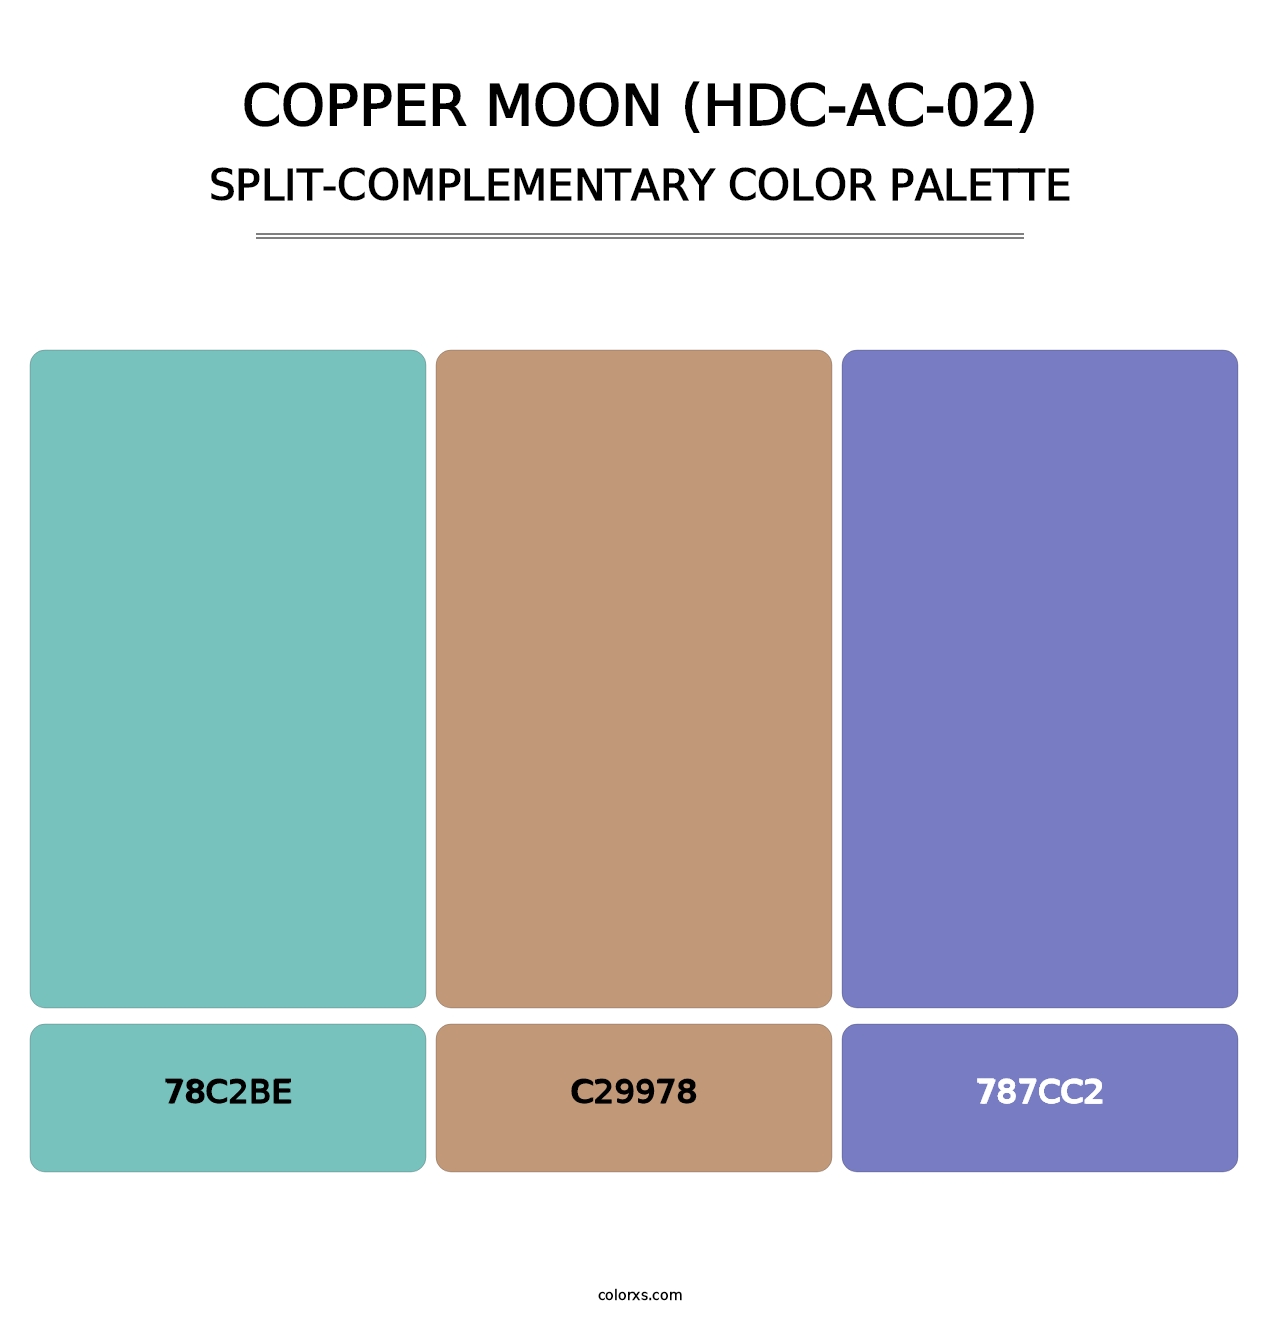 Copper Moon (HDC-AC-02) - Split-Complementary Color Palette